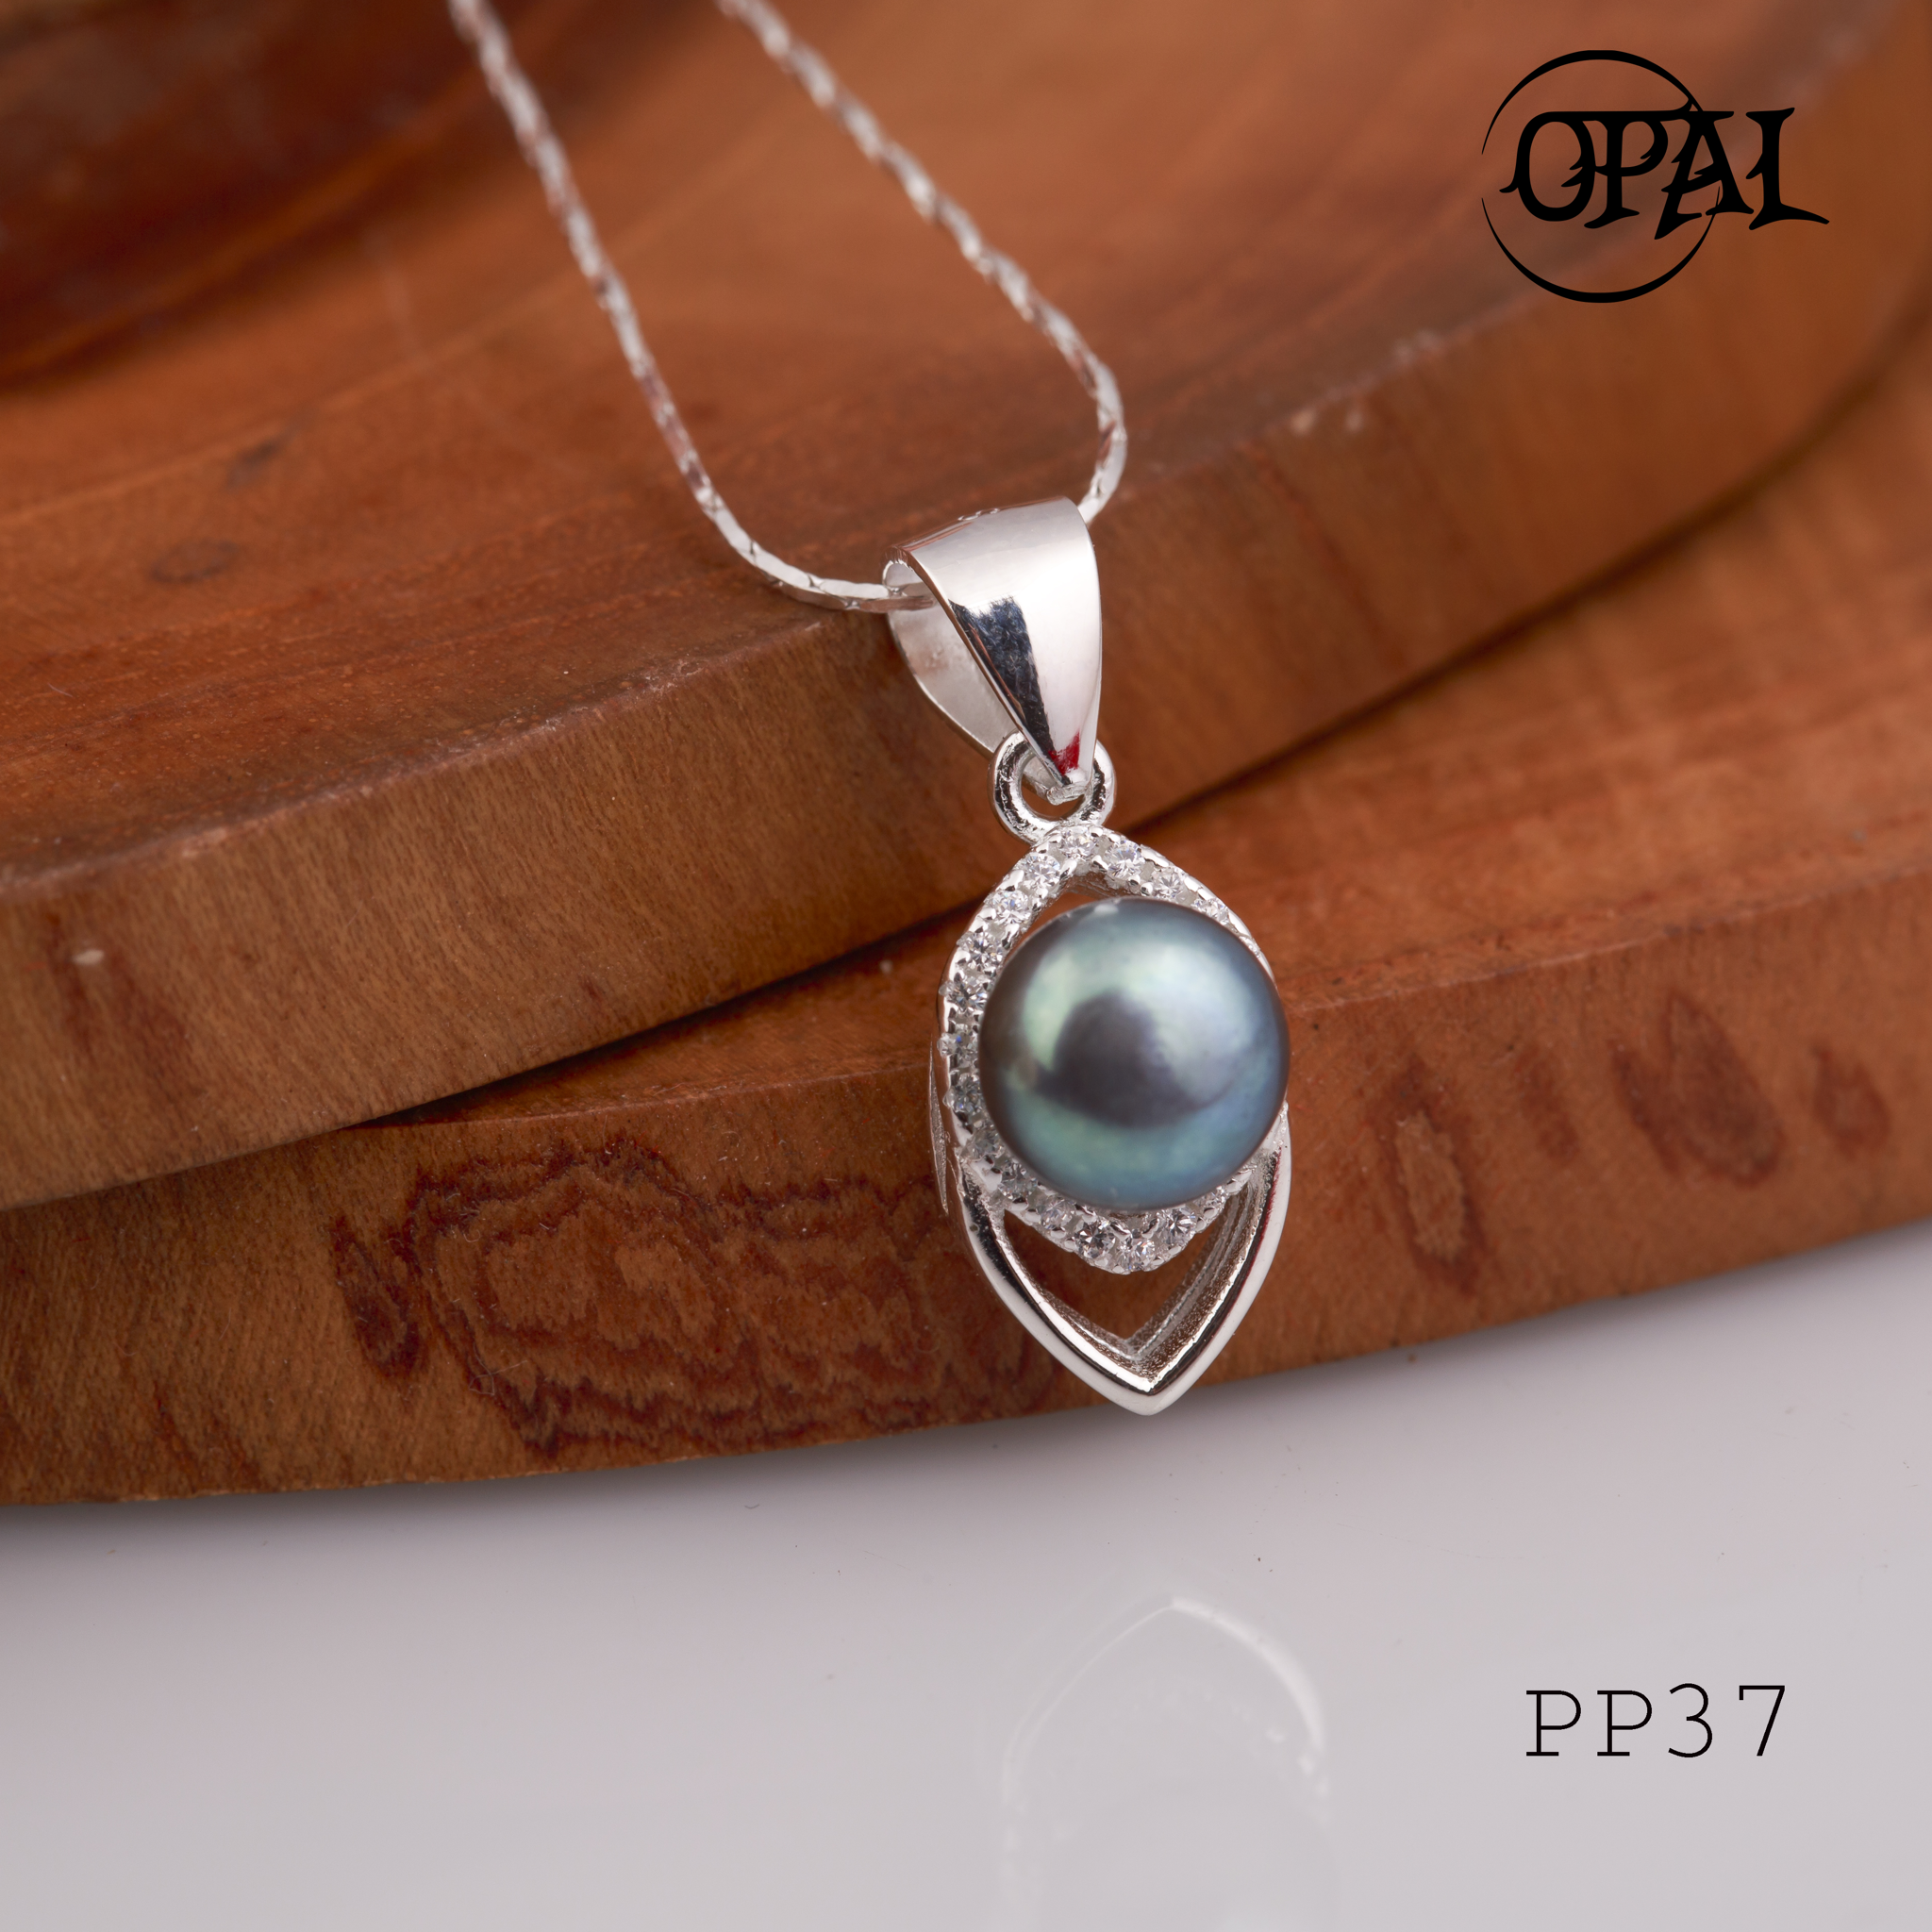  PP37- Dây chuyền bạc kèm mặt Ngọc Trai OPAL 